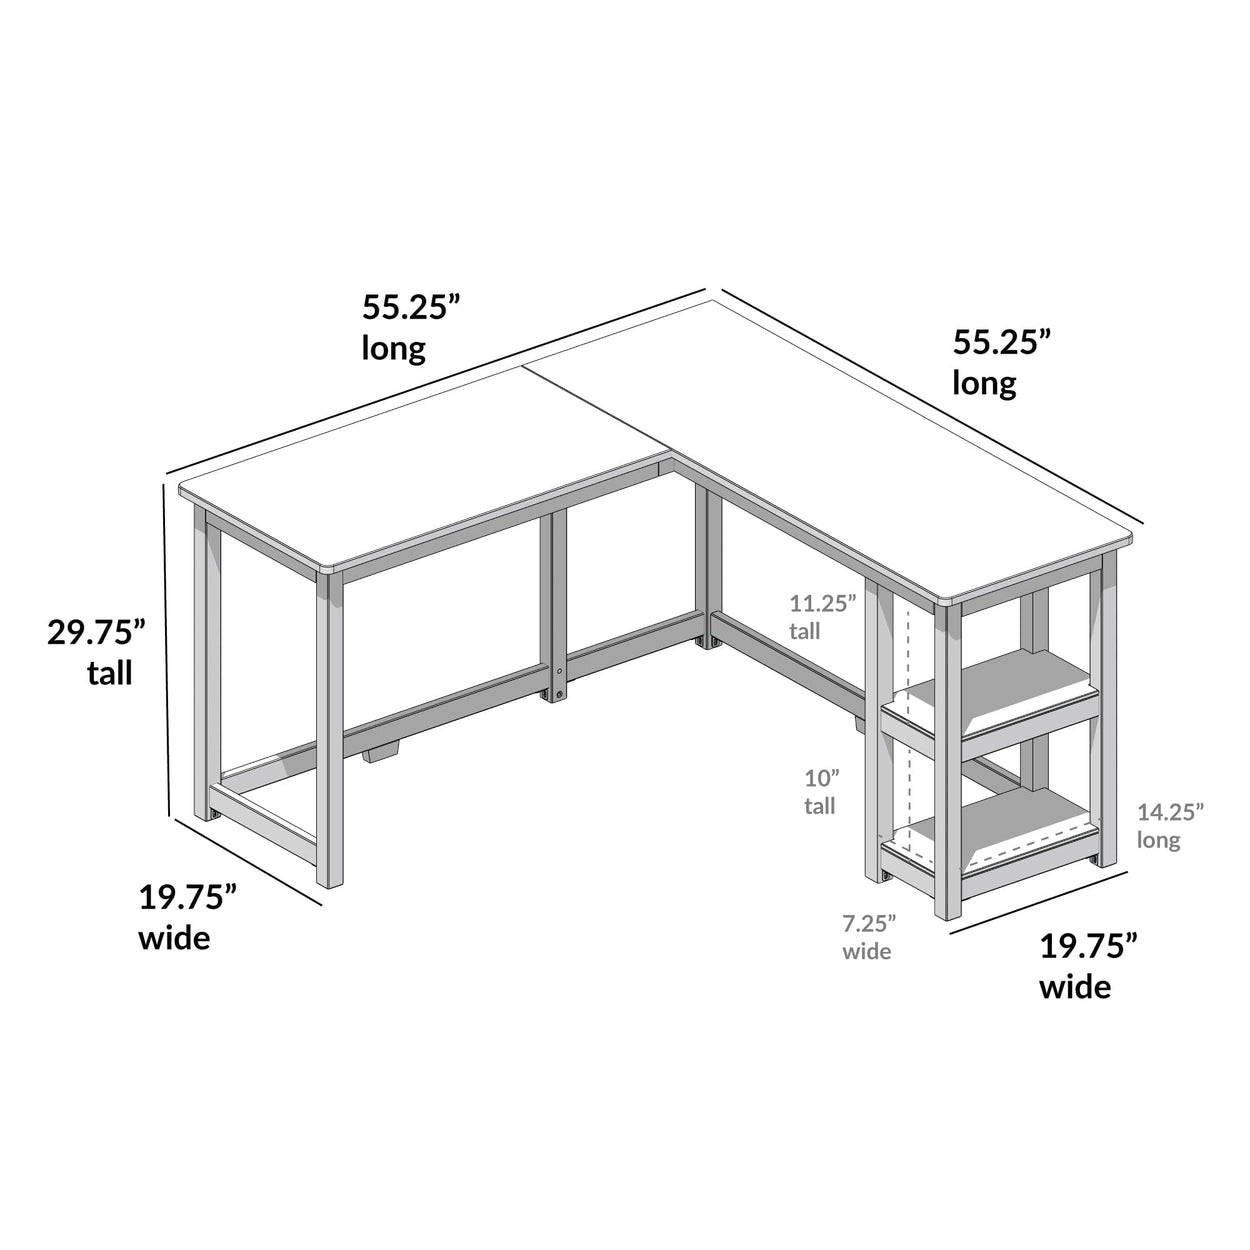 181450-001 : Furniture K/D Corner Desk w/ Shelves, Natural